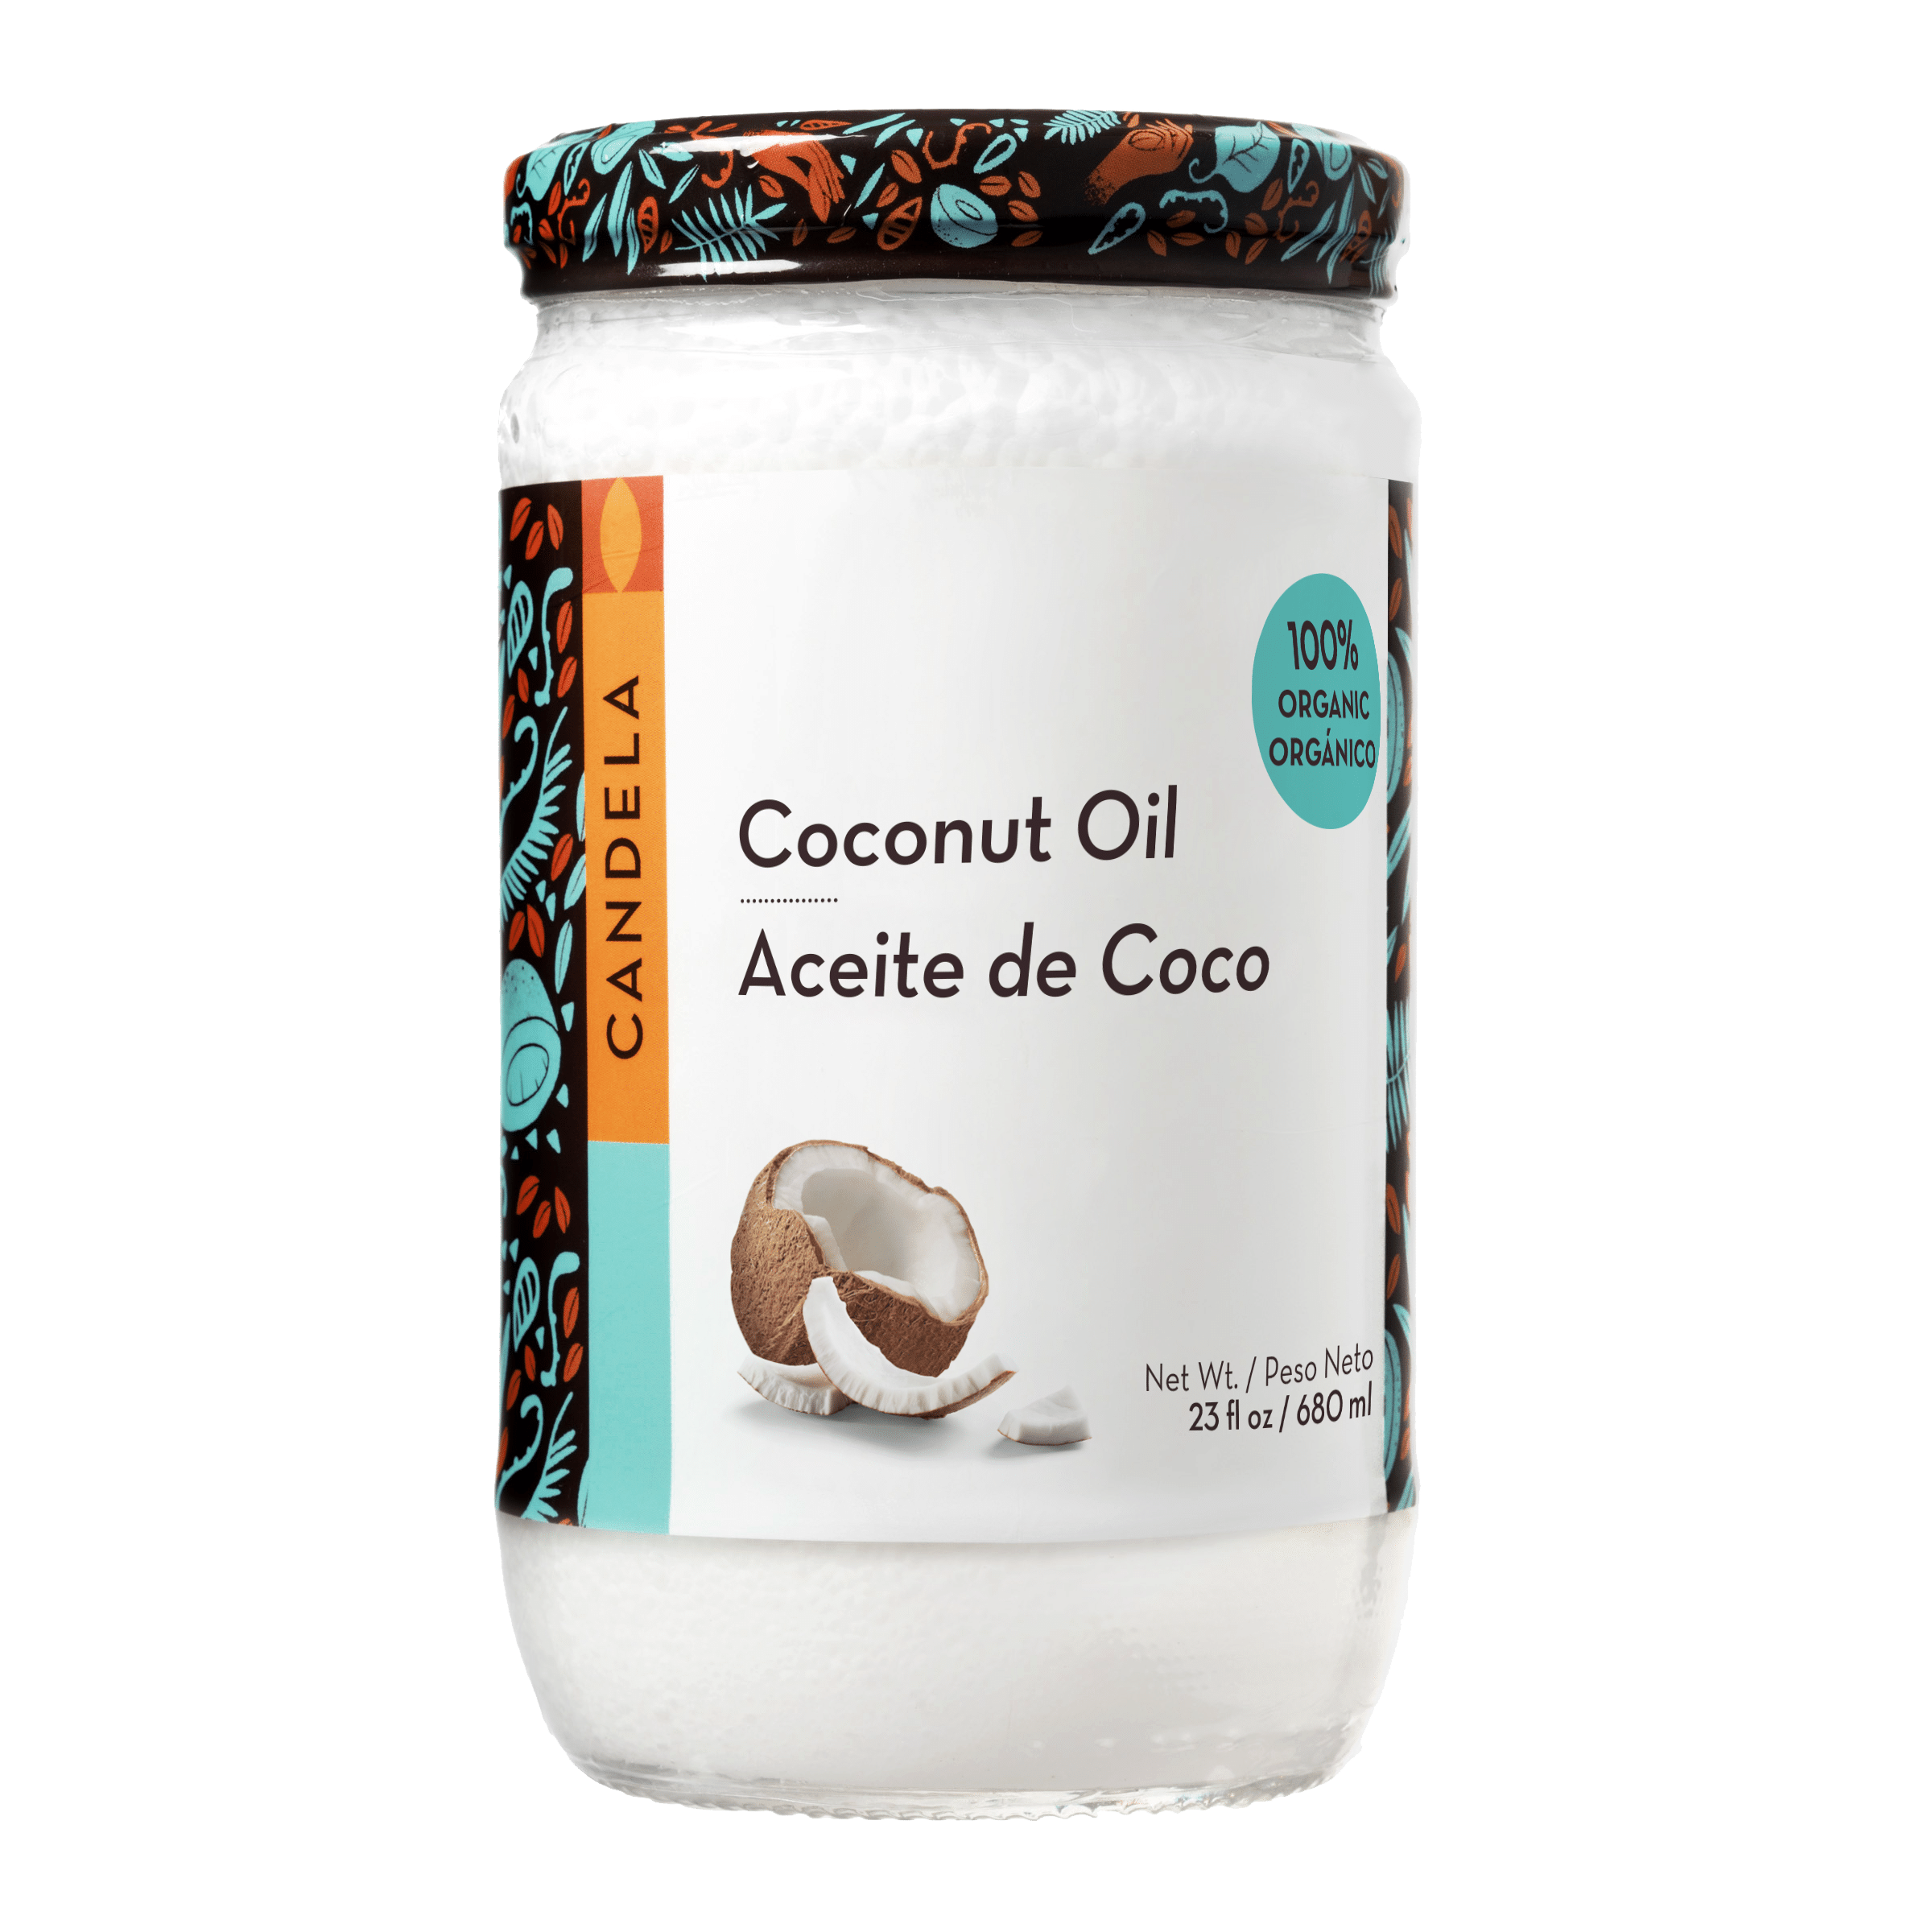 Soy Aceite de Coco